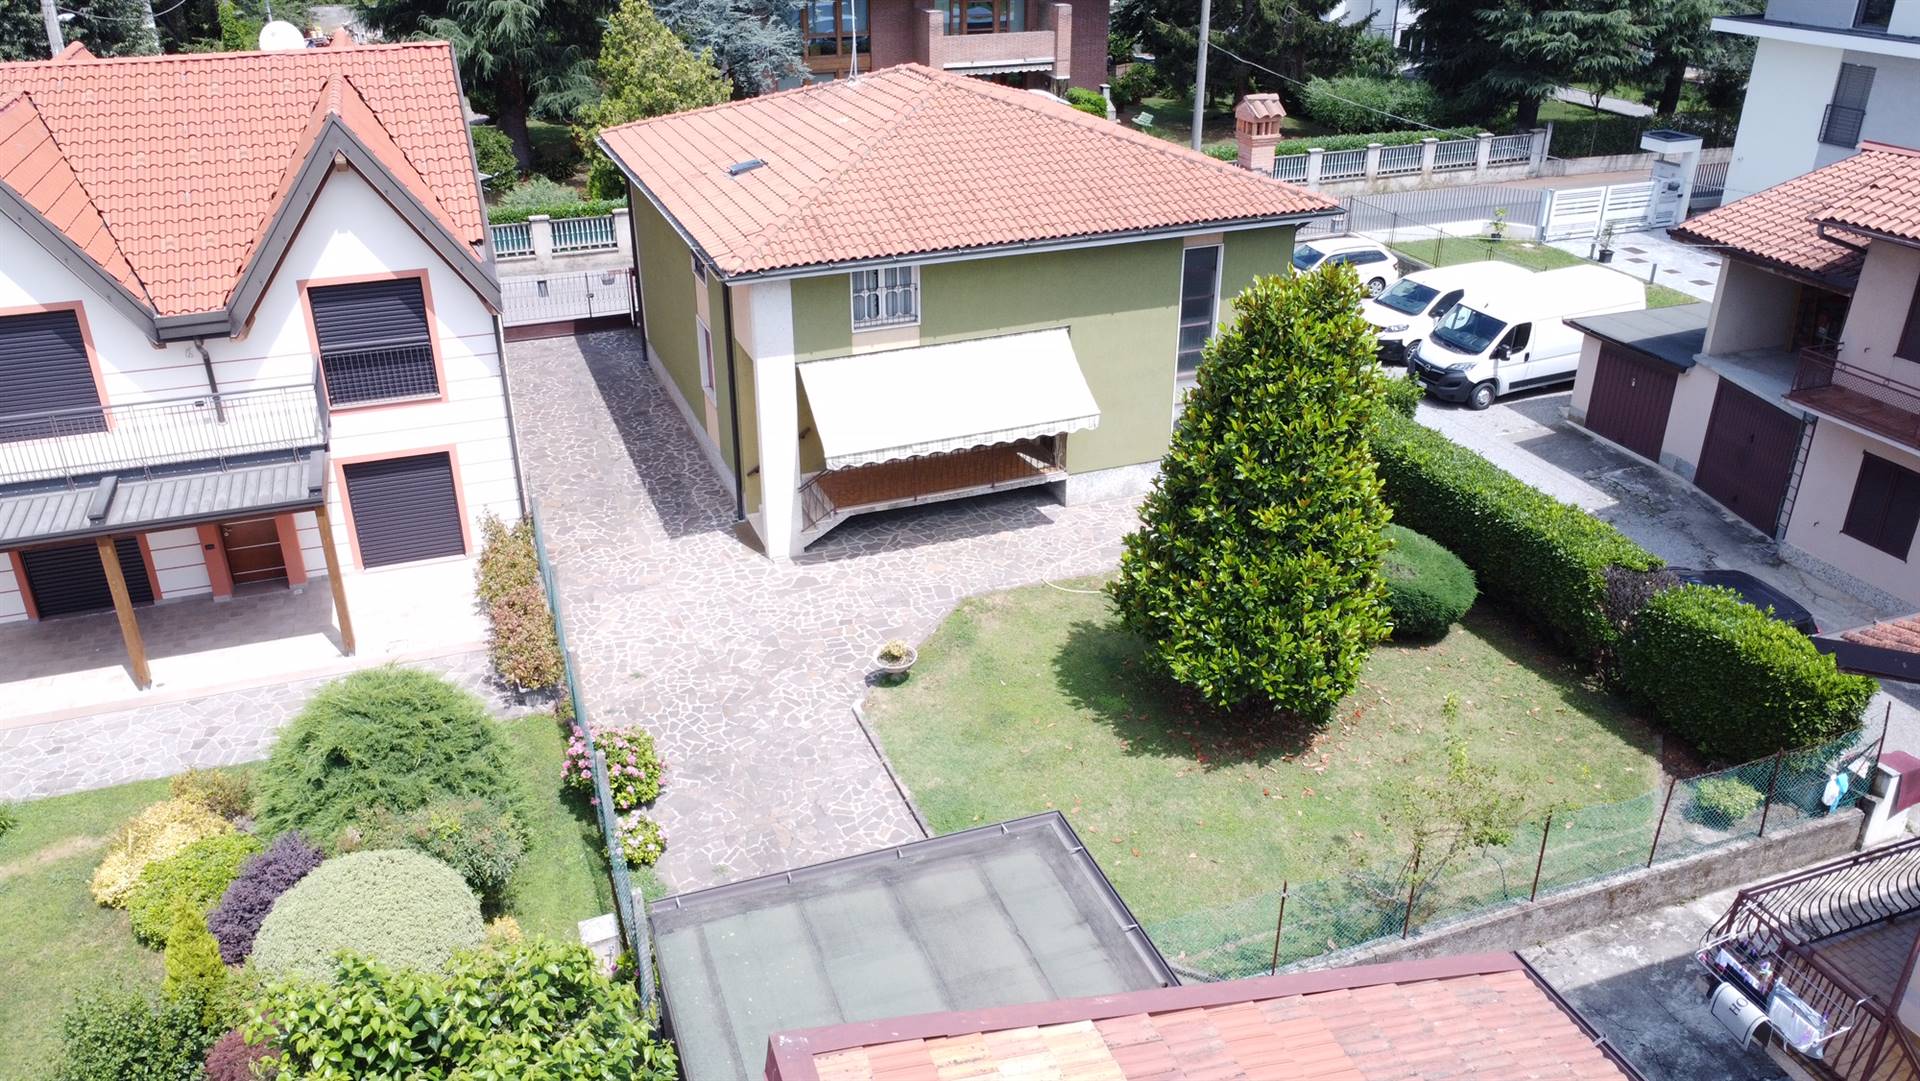 COLLEONI STUDIO IMMOBILIARE propone in vendita Villa SINGOLA totalmente INDIPENDENTE. L' immobile è dotato di abitazione al piano terra con grande 